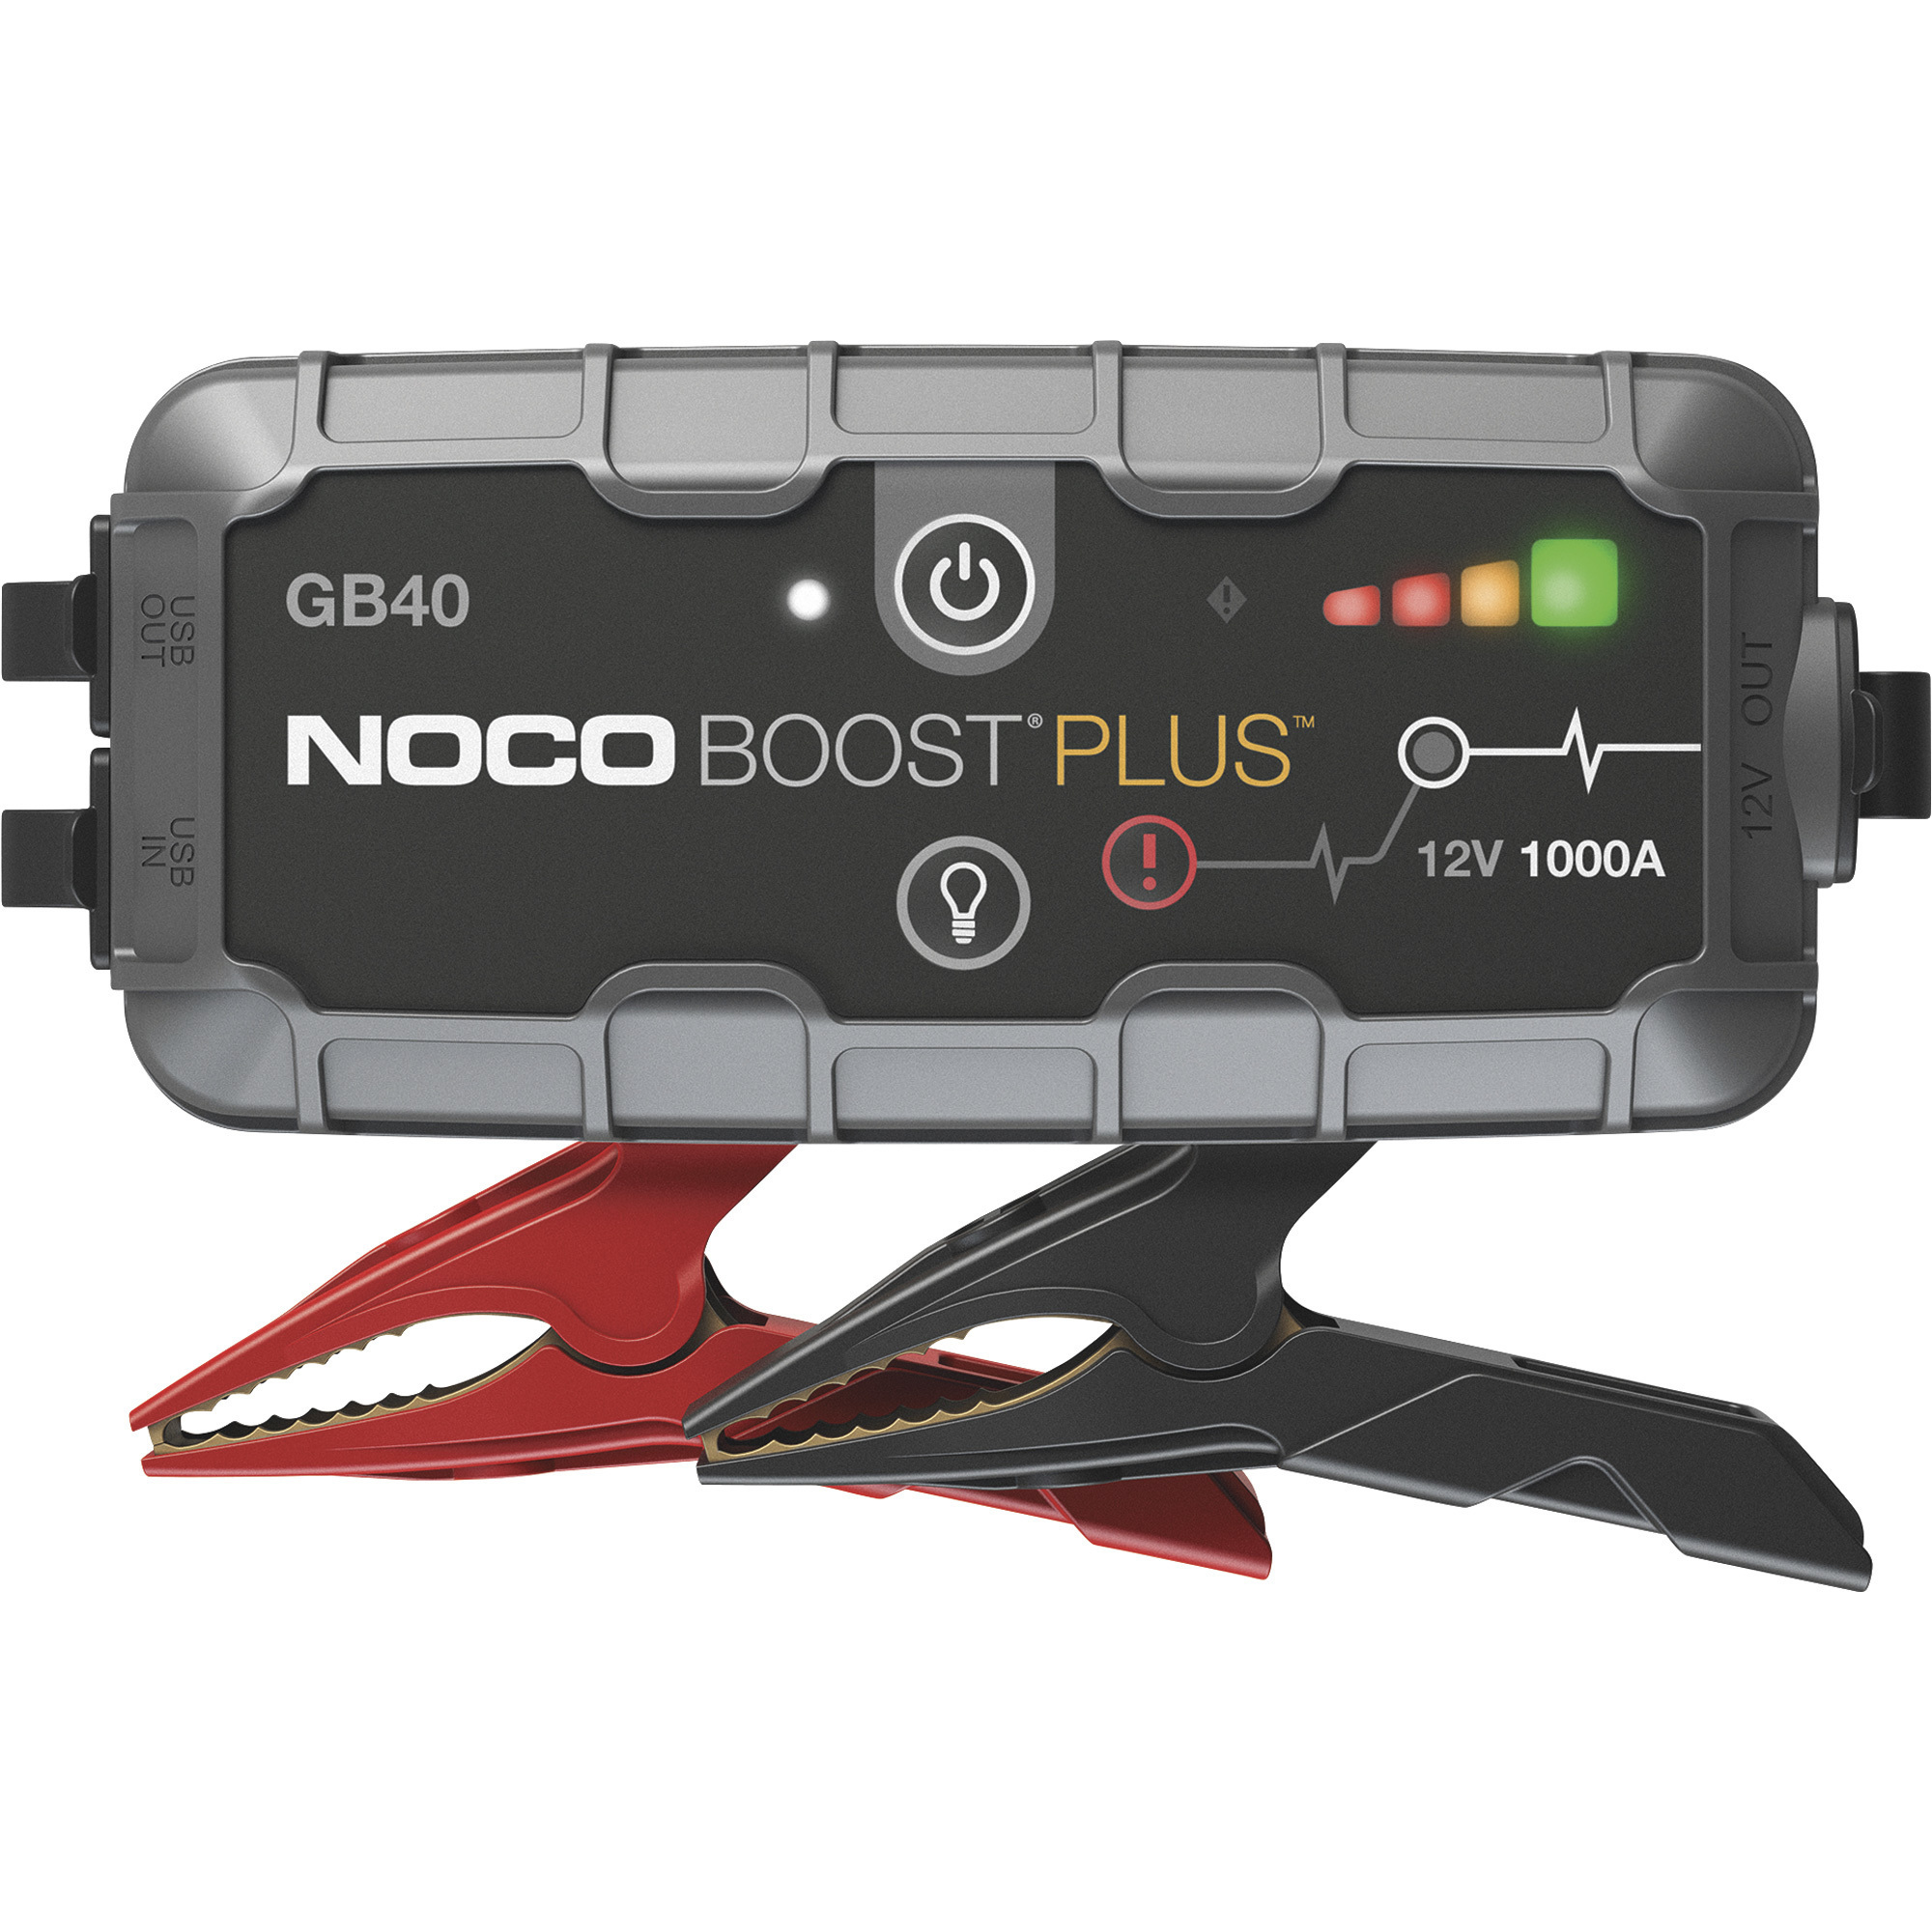 Noco Genius BoostPlus Compact Lithium-Ion Jump Starter â 1000 Amps, Model GB40